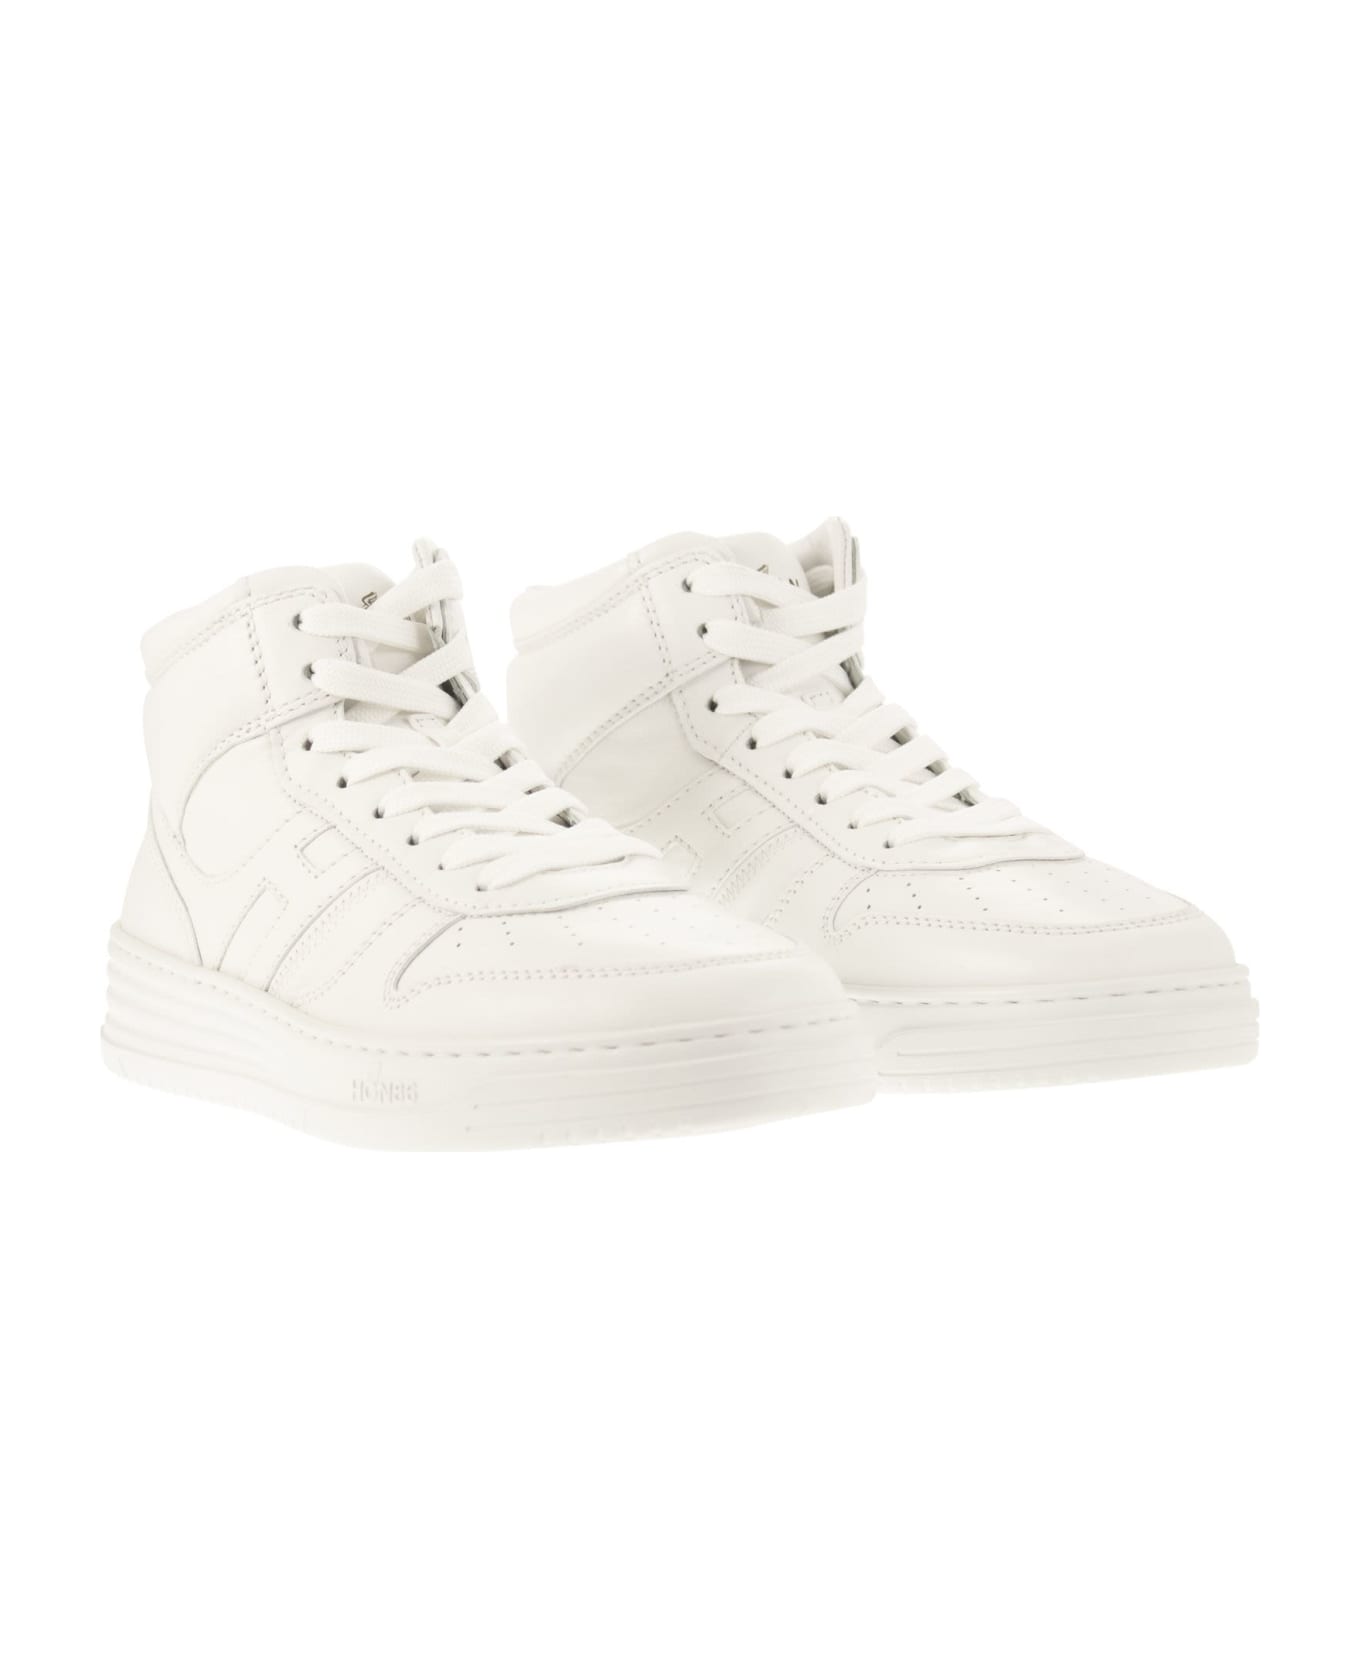 Hogan White Leather Sneakers - White